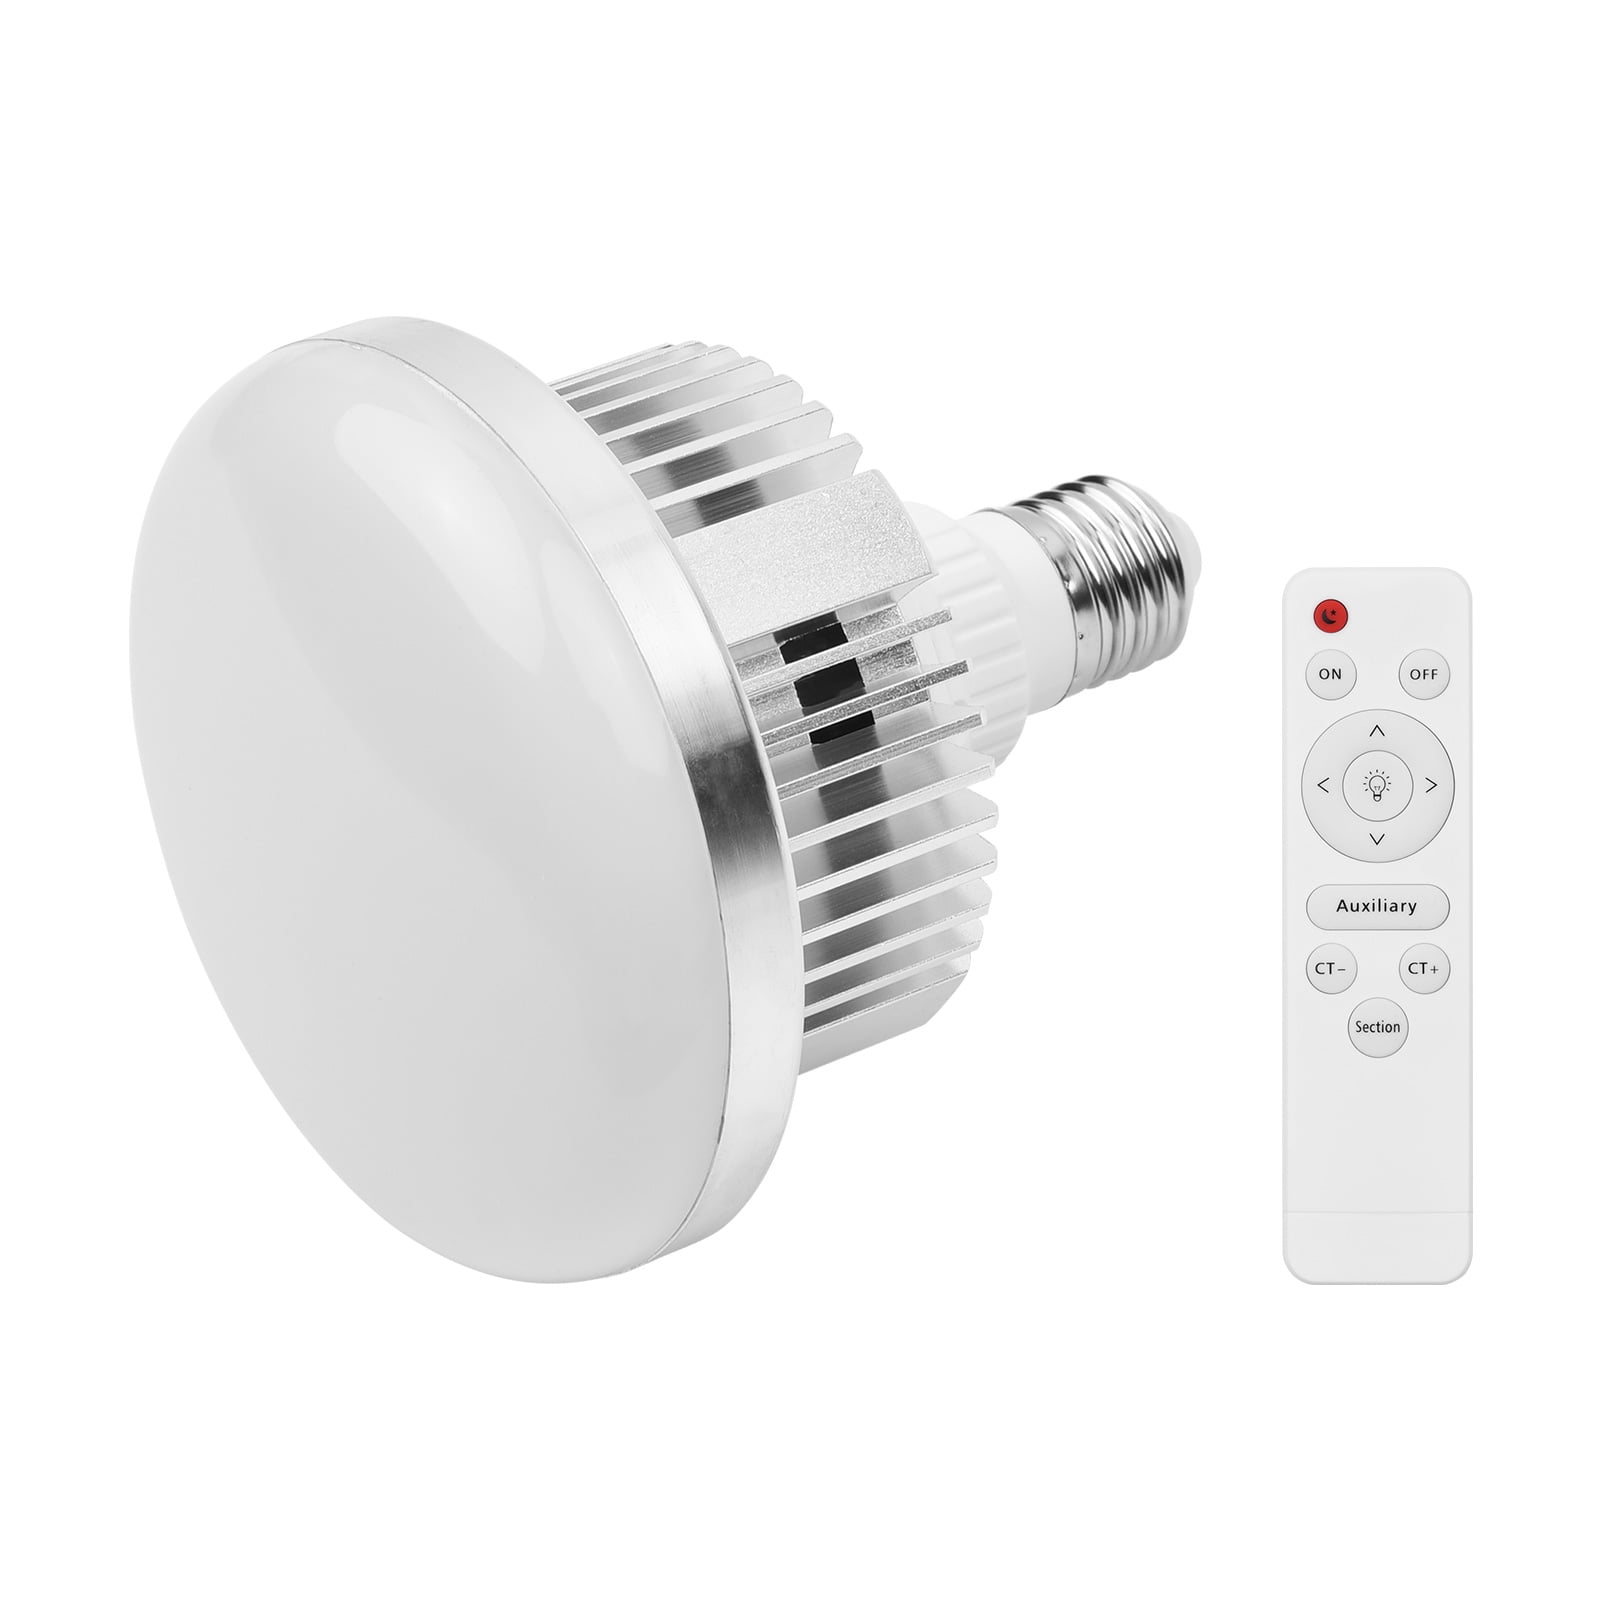 3.5W E27 LED Light Bulbs Frigidaire Refrigerator Bulbs Replaces